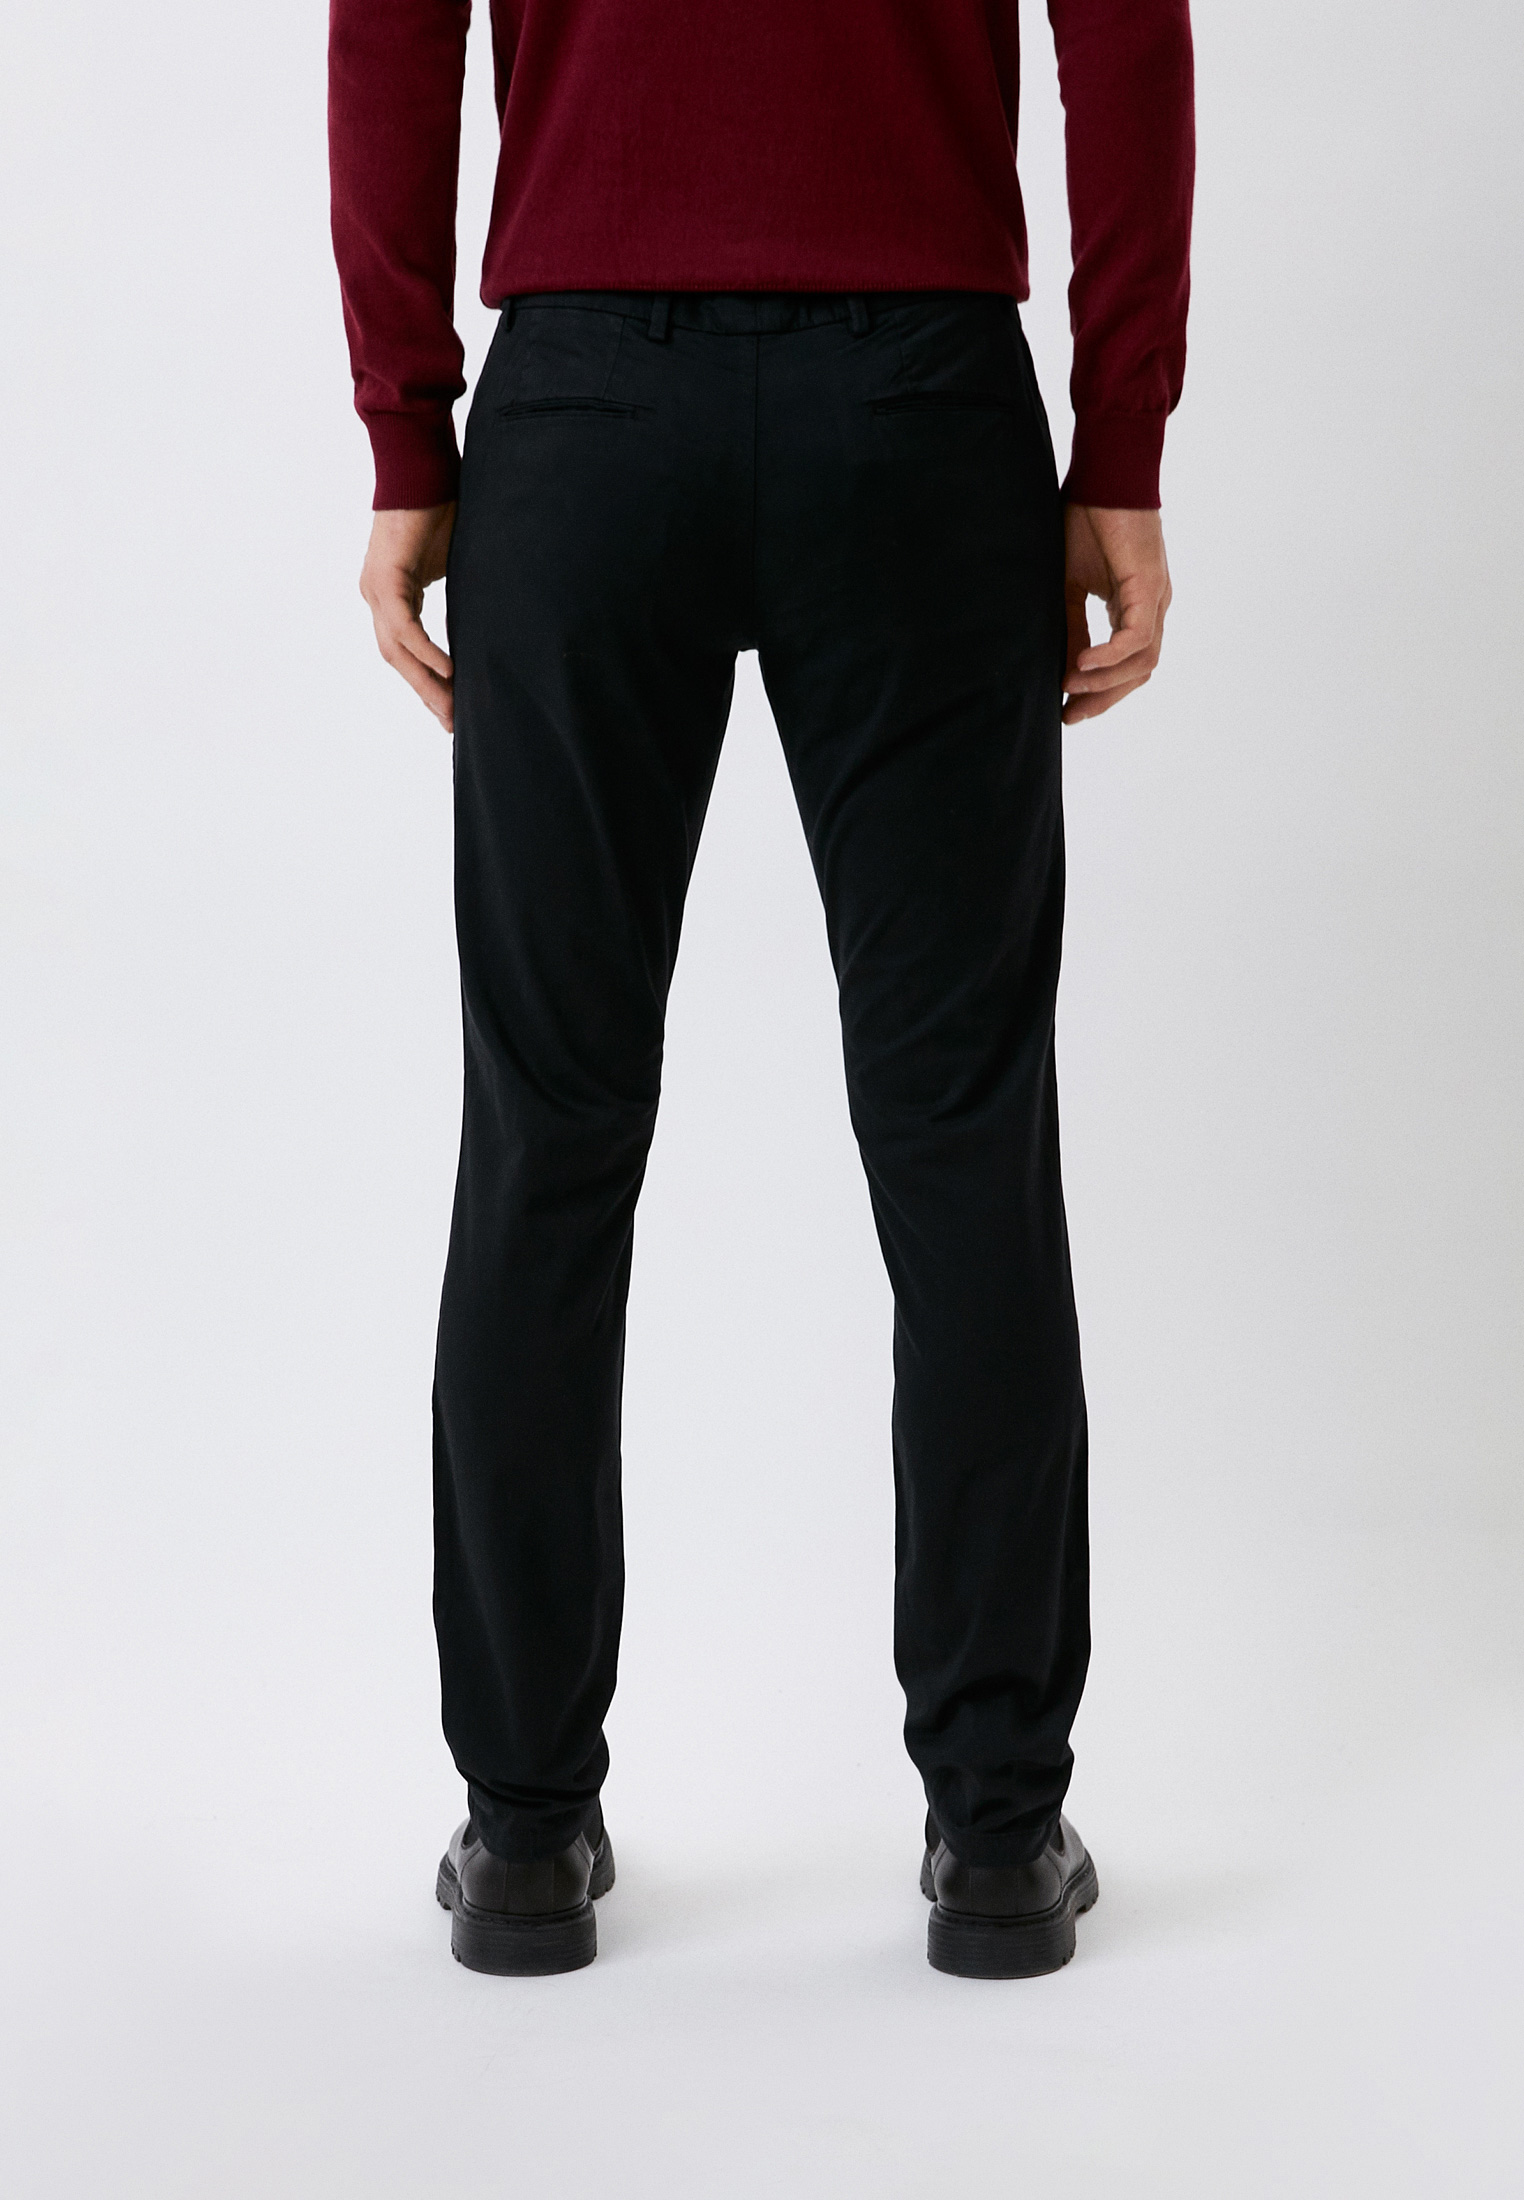 Мужские повседневные брюки Trussardi (Труссарди) 52P00000-1T002361-H-001: изображение 3